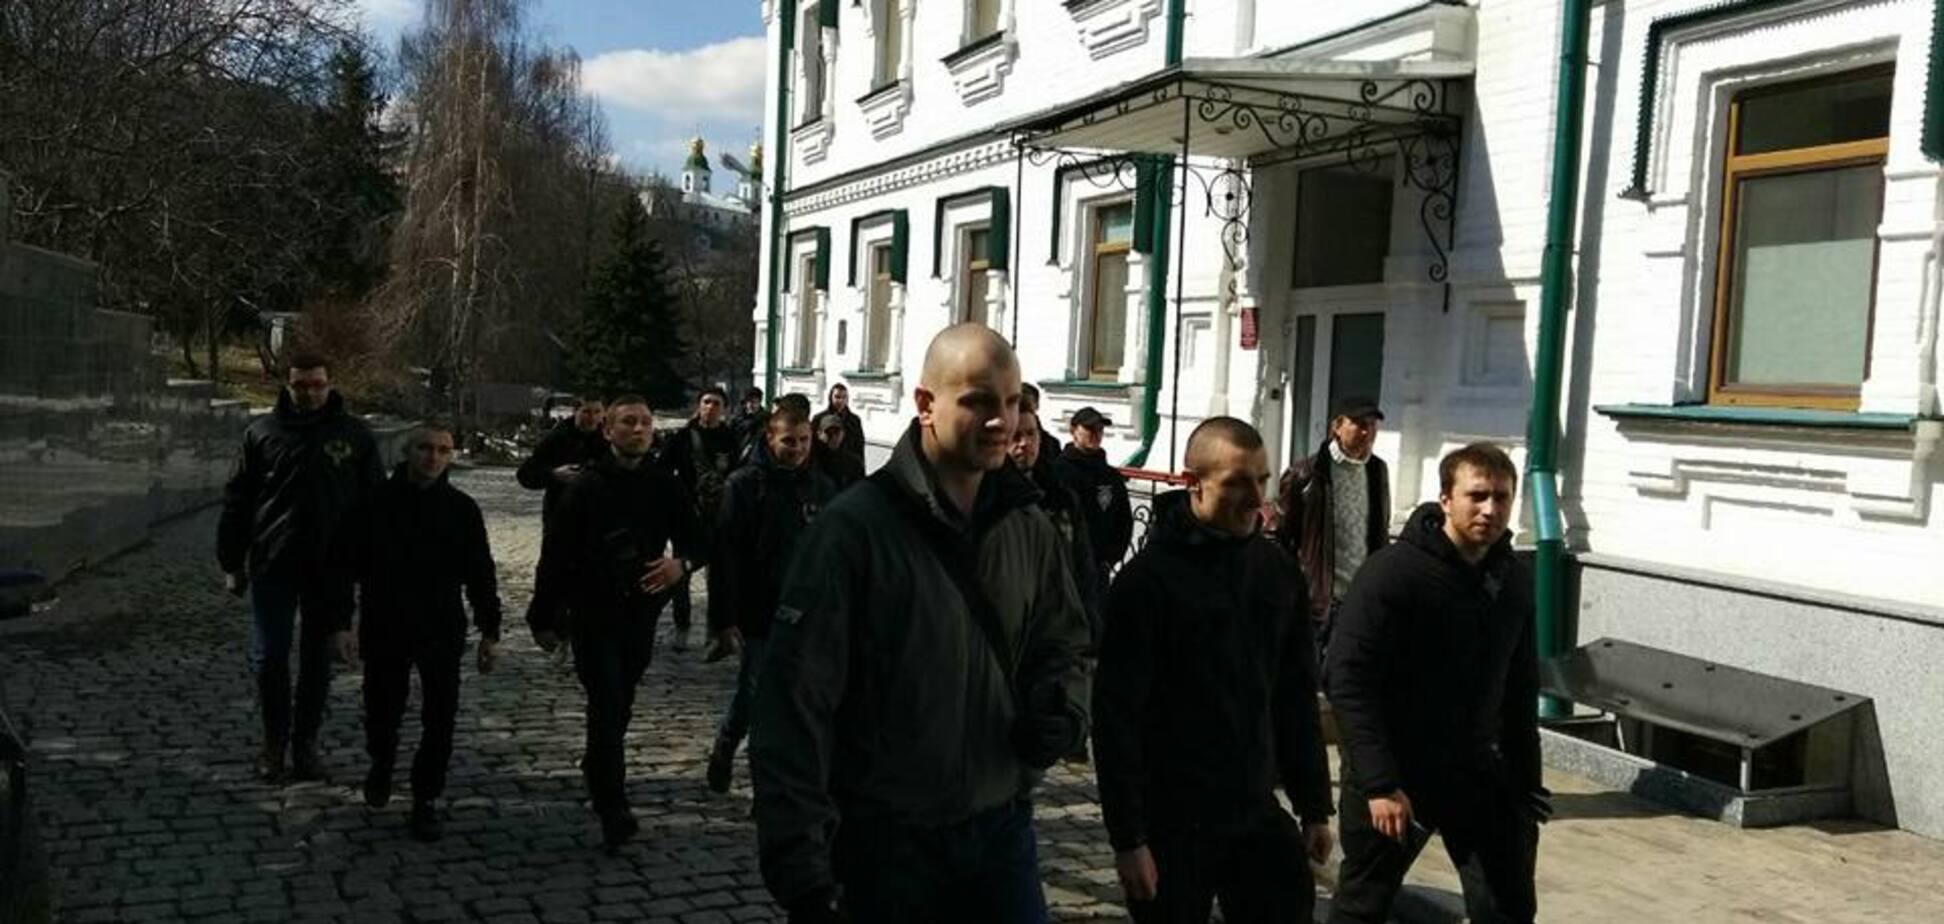 Шукали сепаратистів:  в Києві націоналісти нагрянули з 'екскурсією' в Лавру